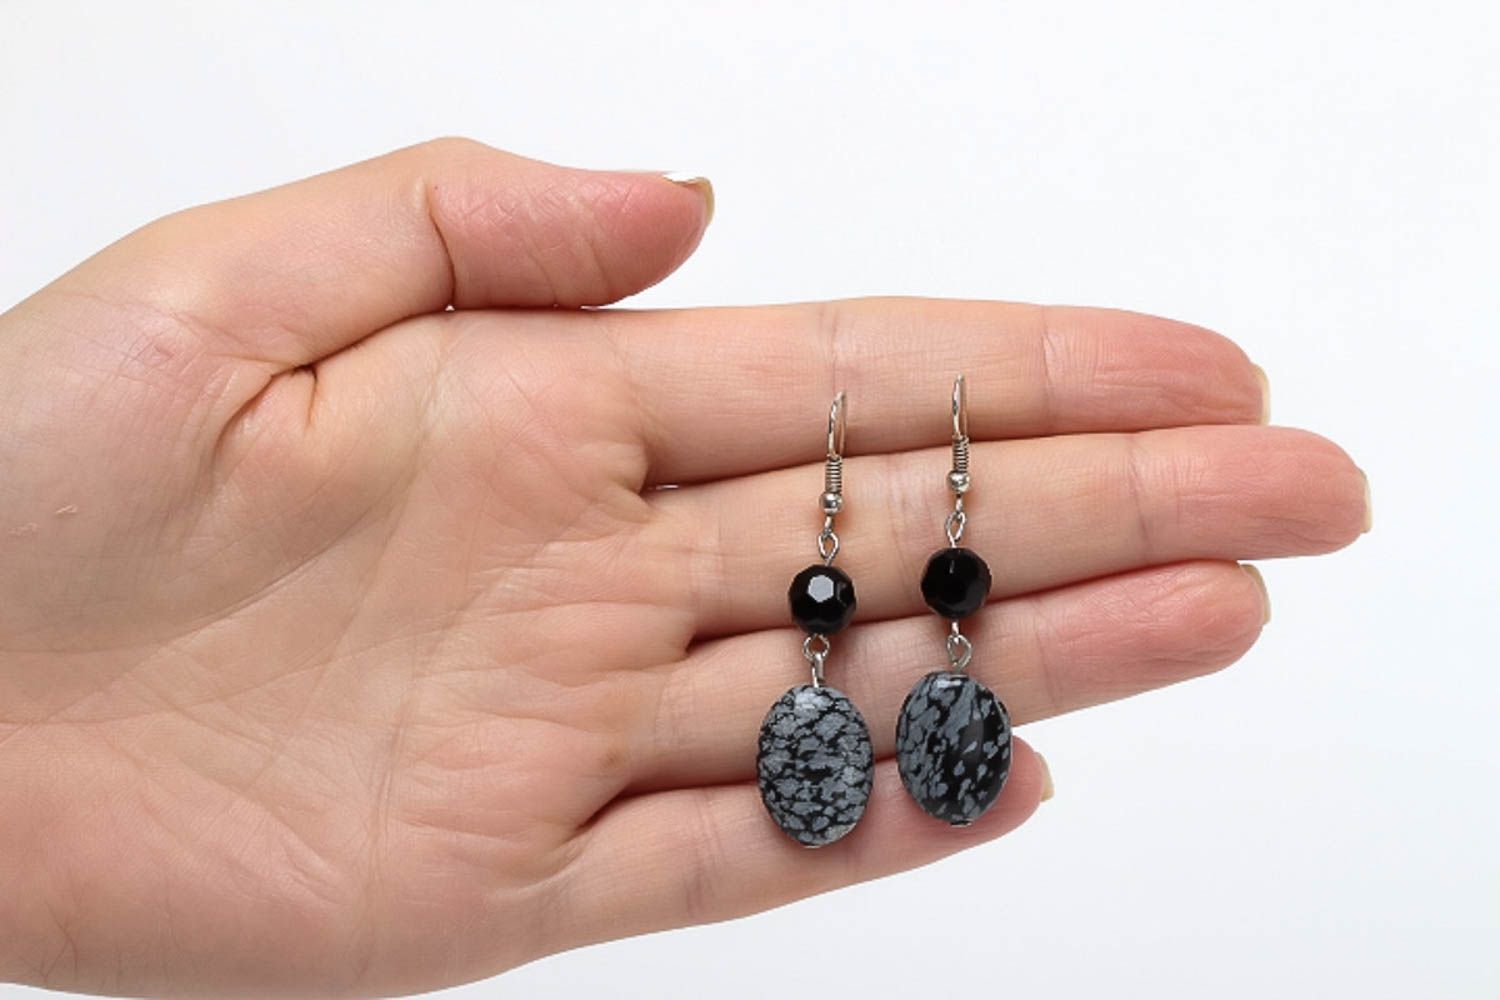 Long earrings fashion jewelry handmade earrings gemstone jewelry gifts for women photo 5